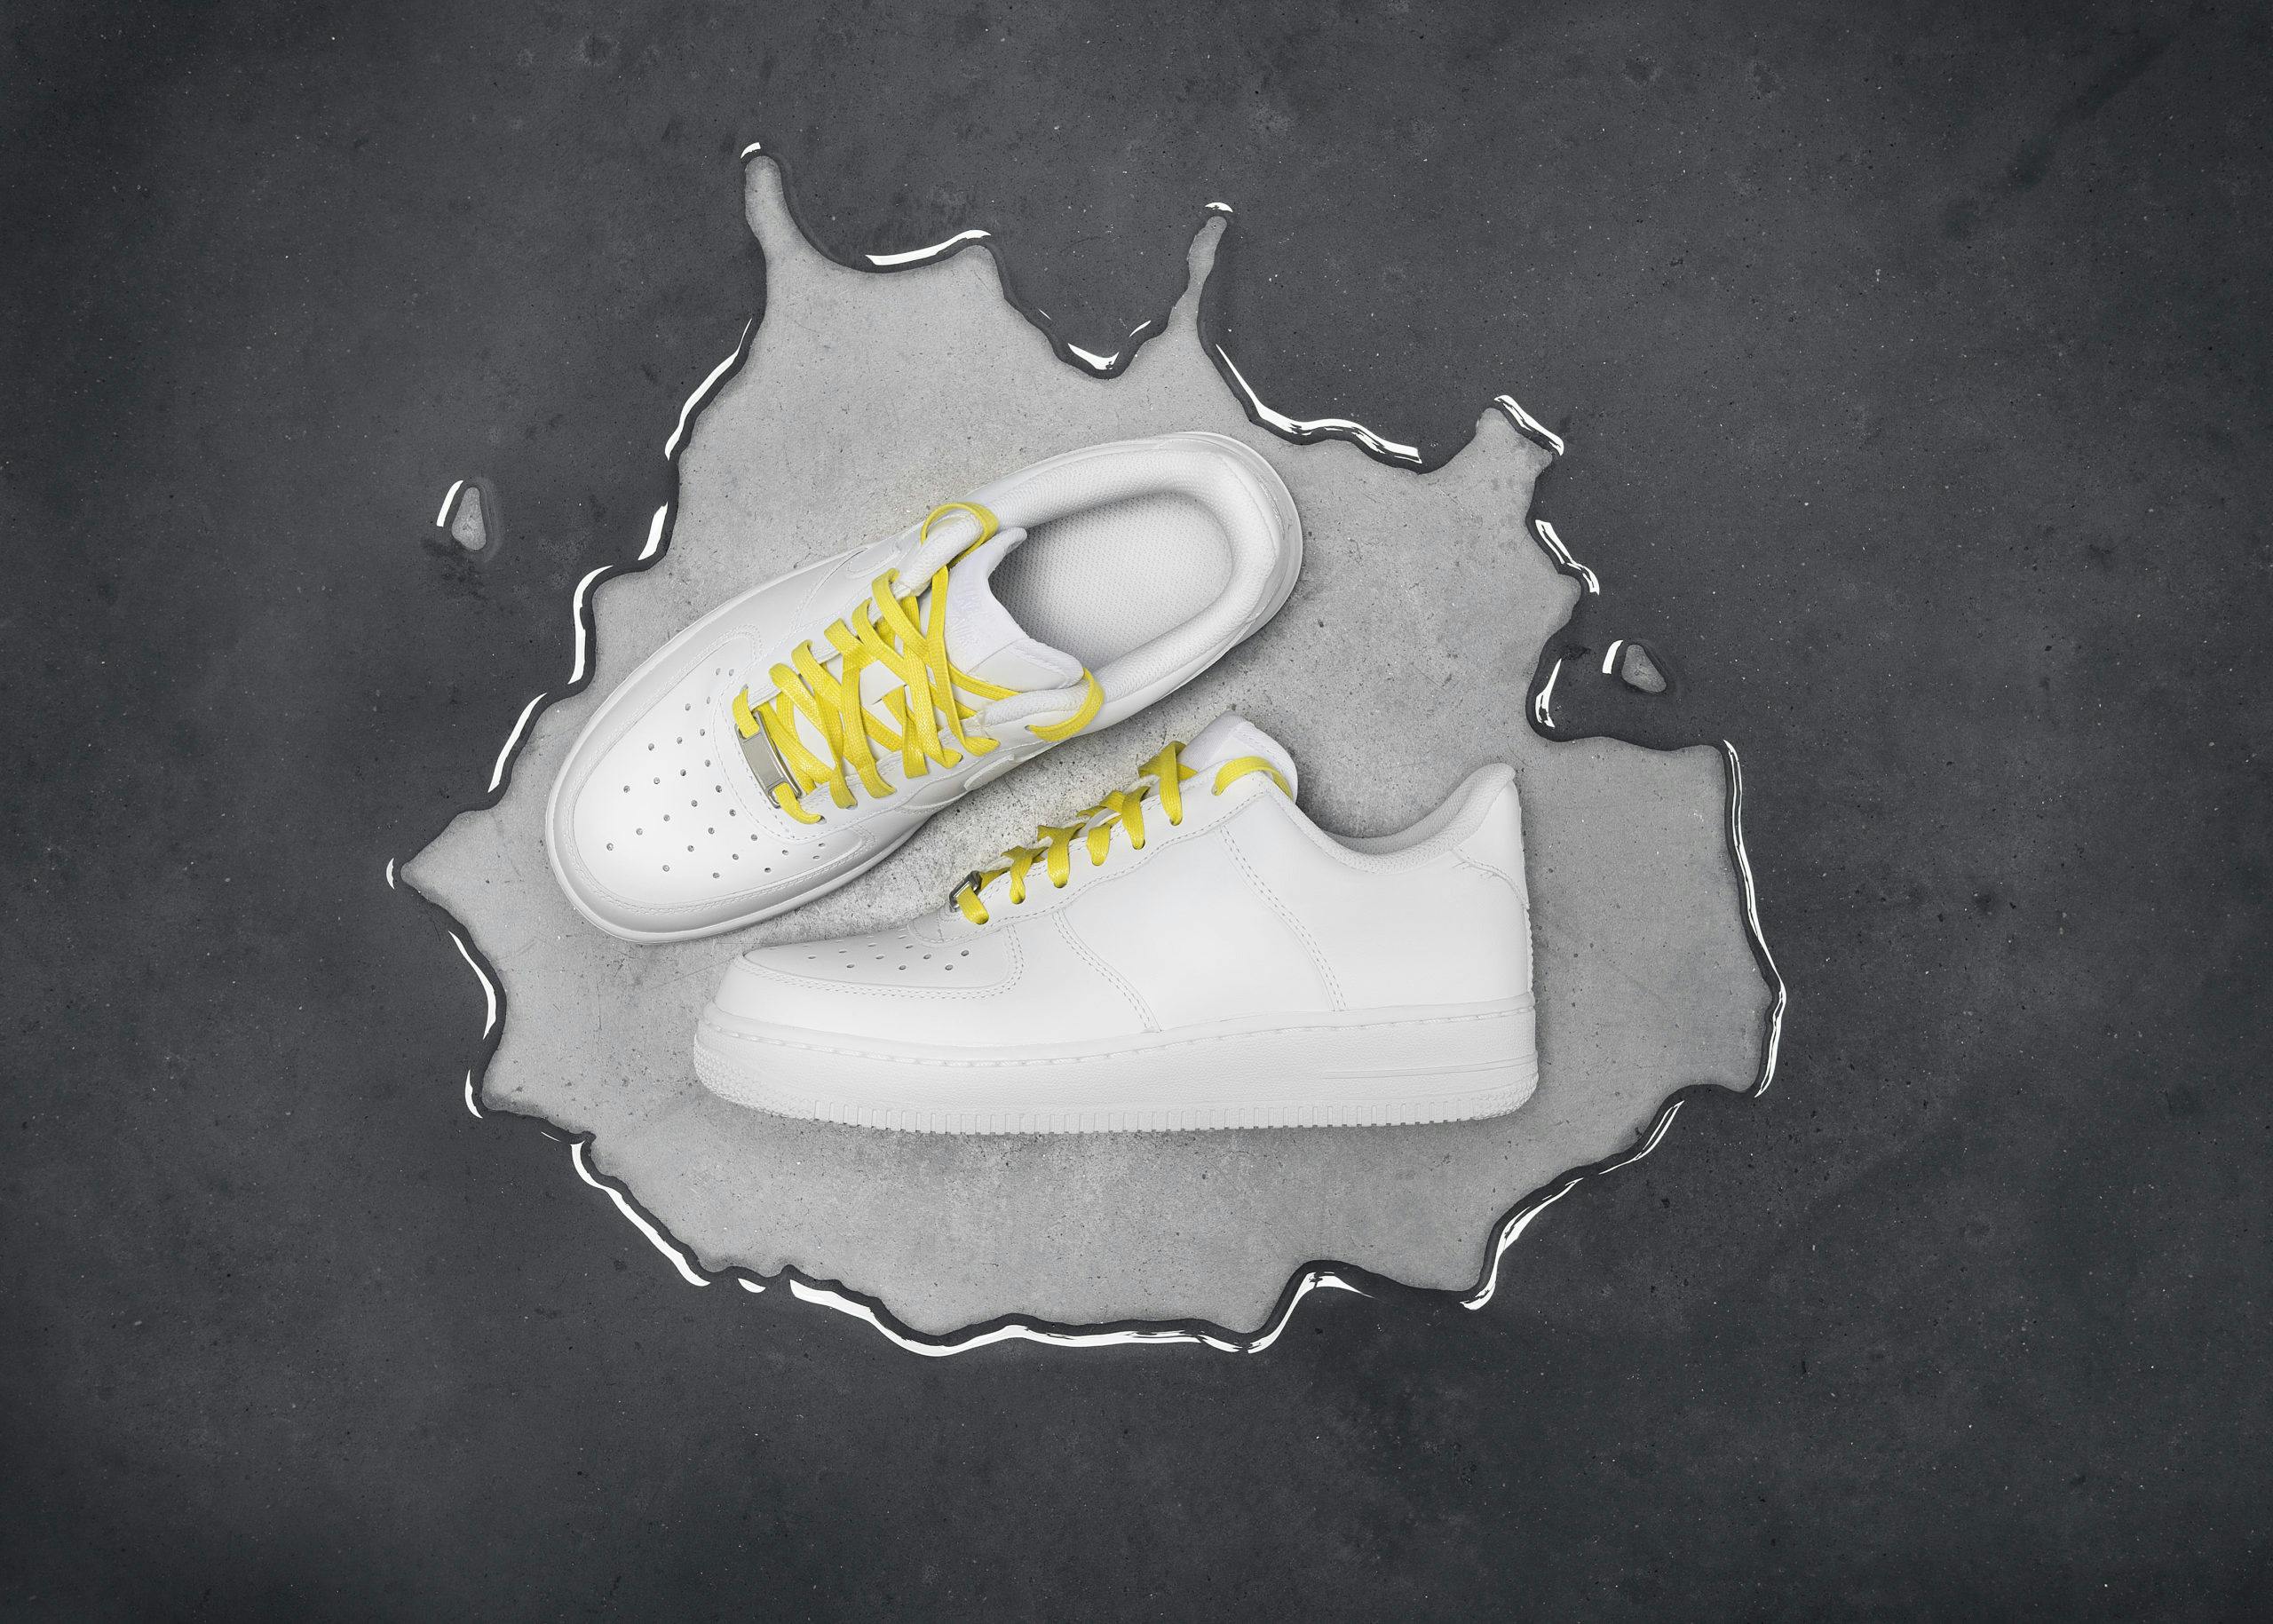 Vita skor med gula skosnören, Brunngårds kampanj Shoe Shame framtagen av Consid Communication